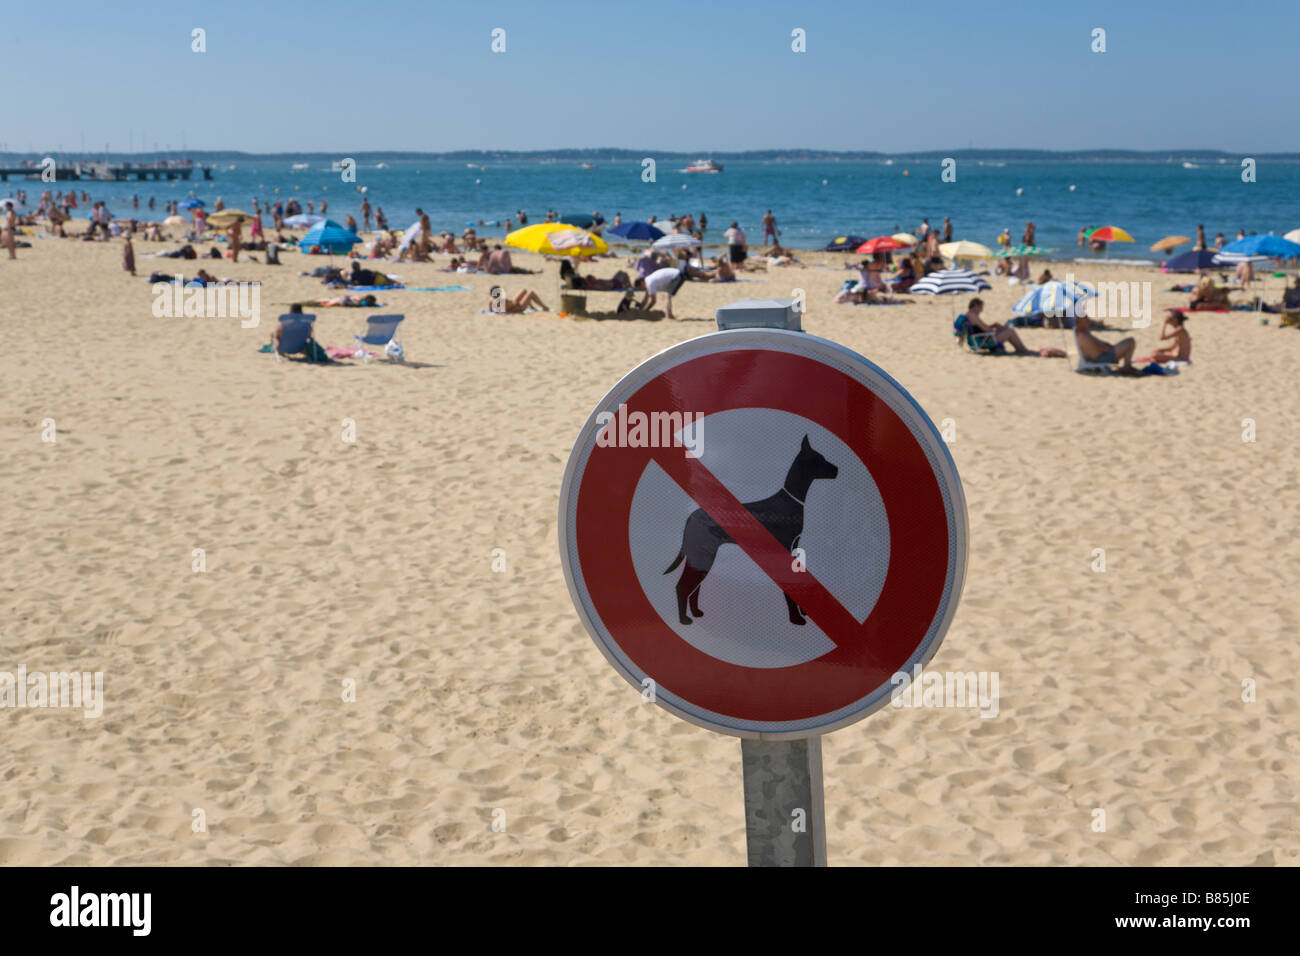 'No hay perros' permitido firmar, Playa, Arcachon, Gironde, Francia Foto de stock